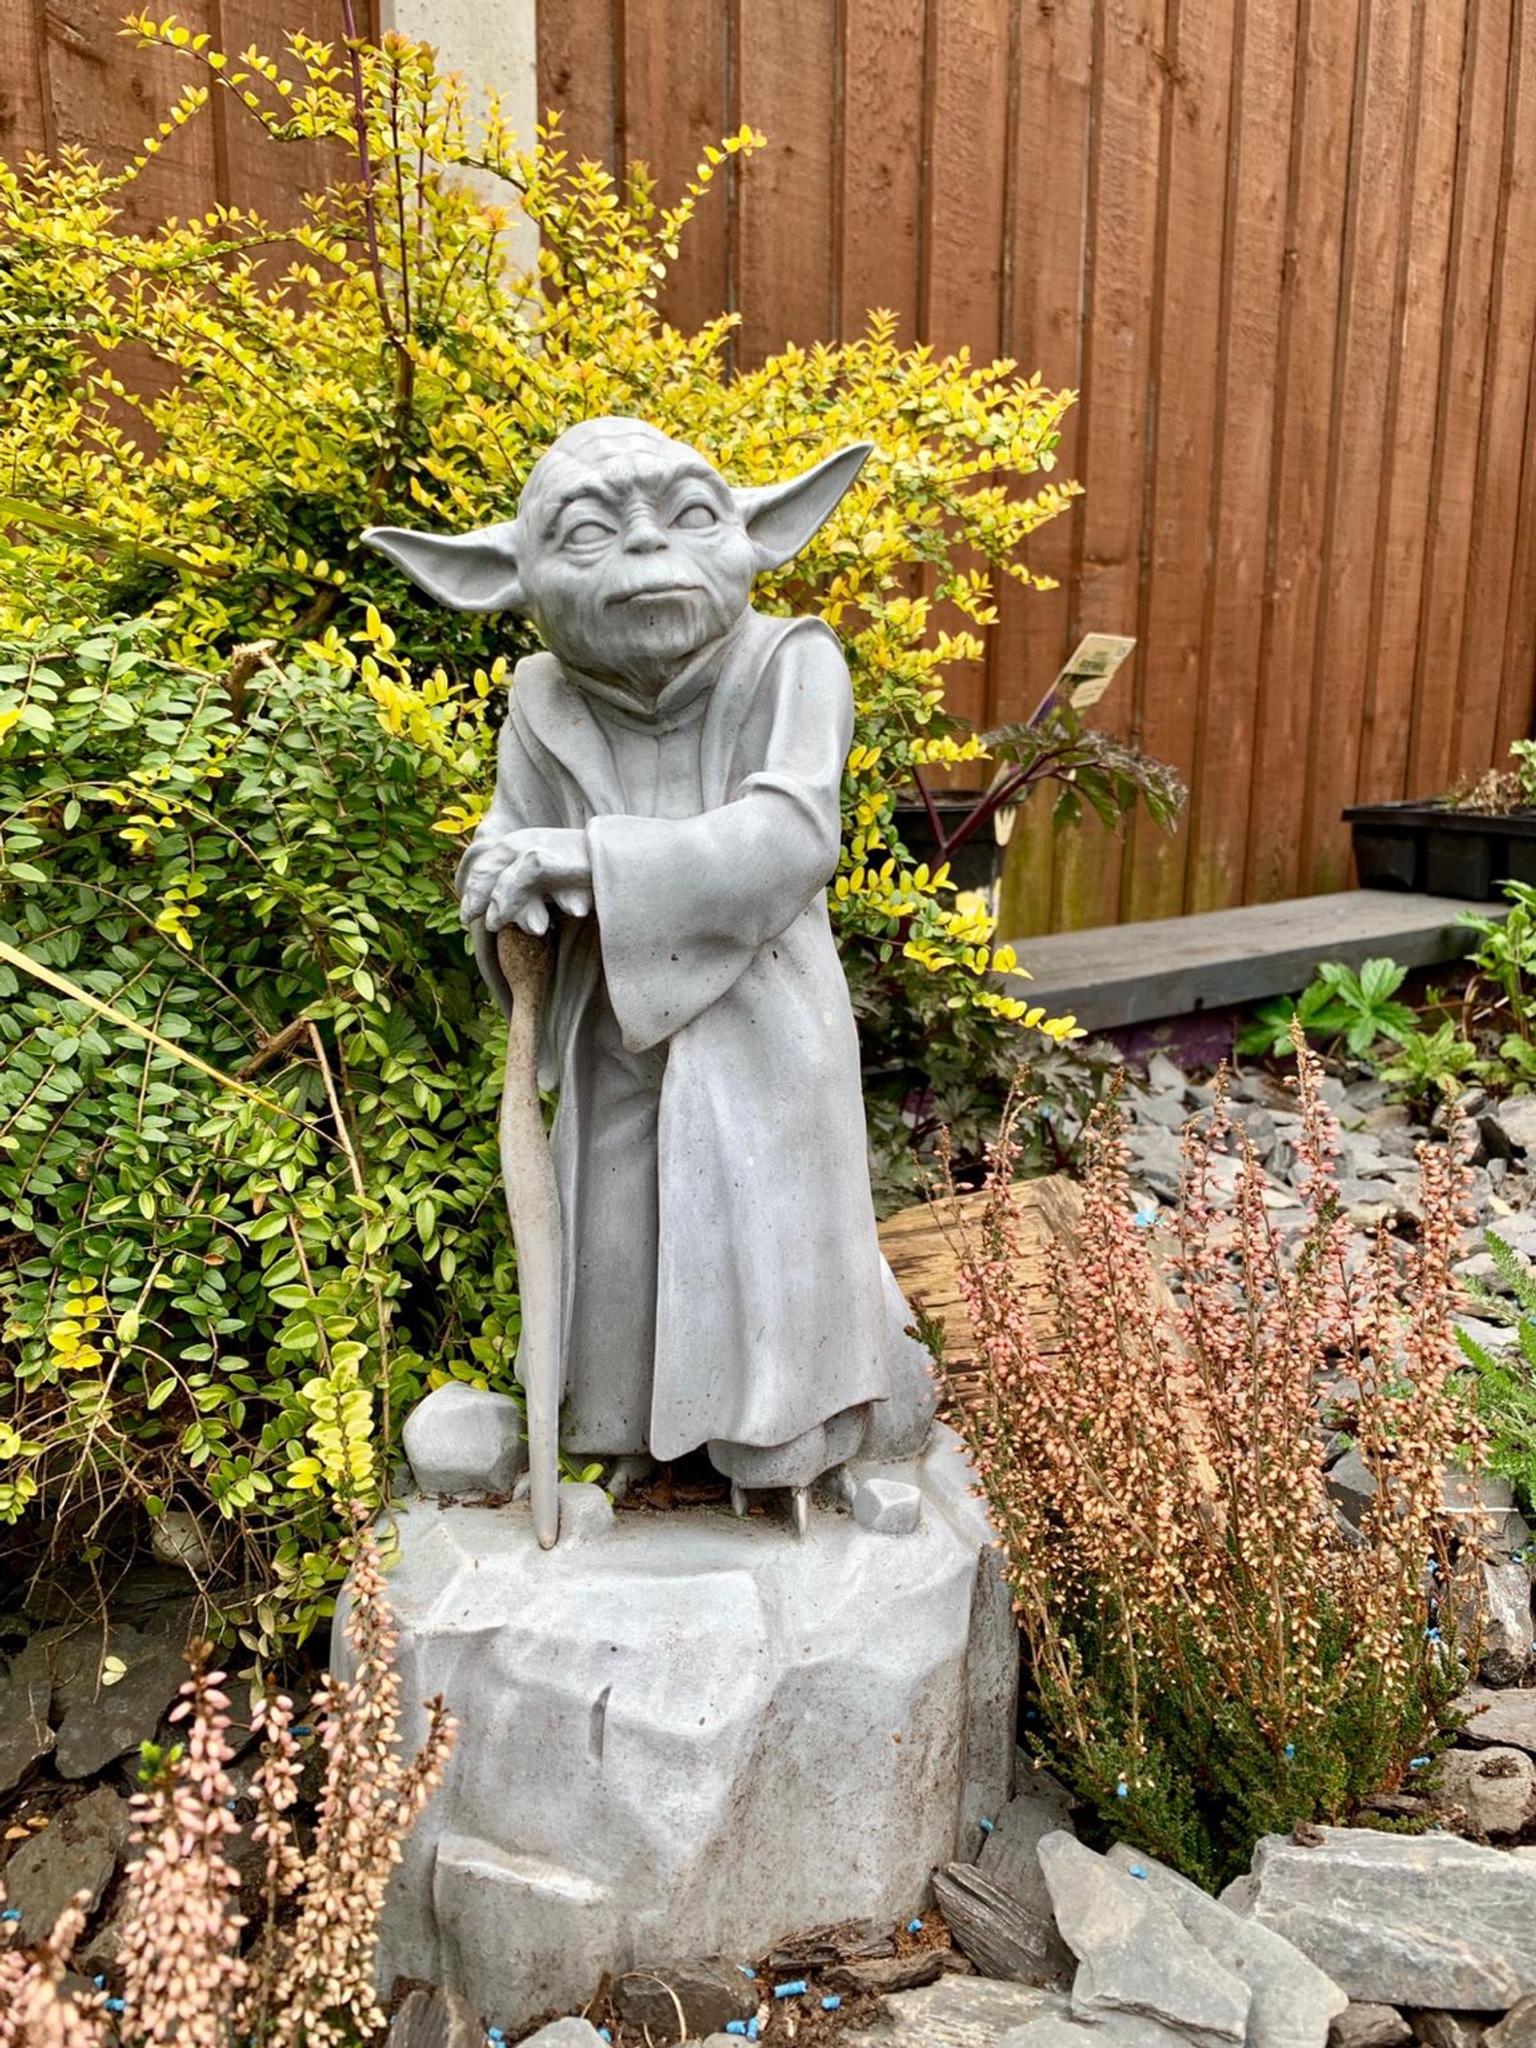 star wars garden statue